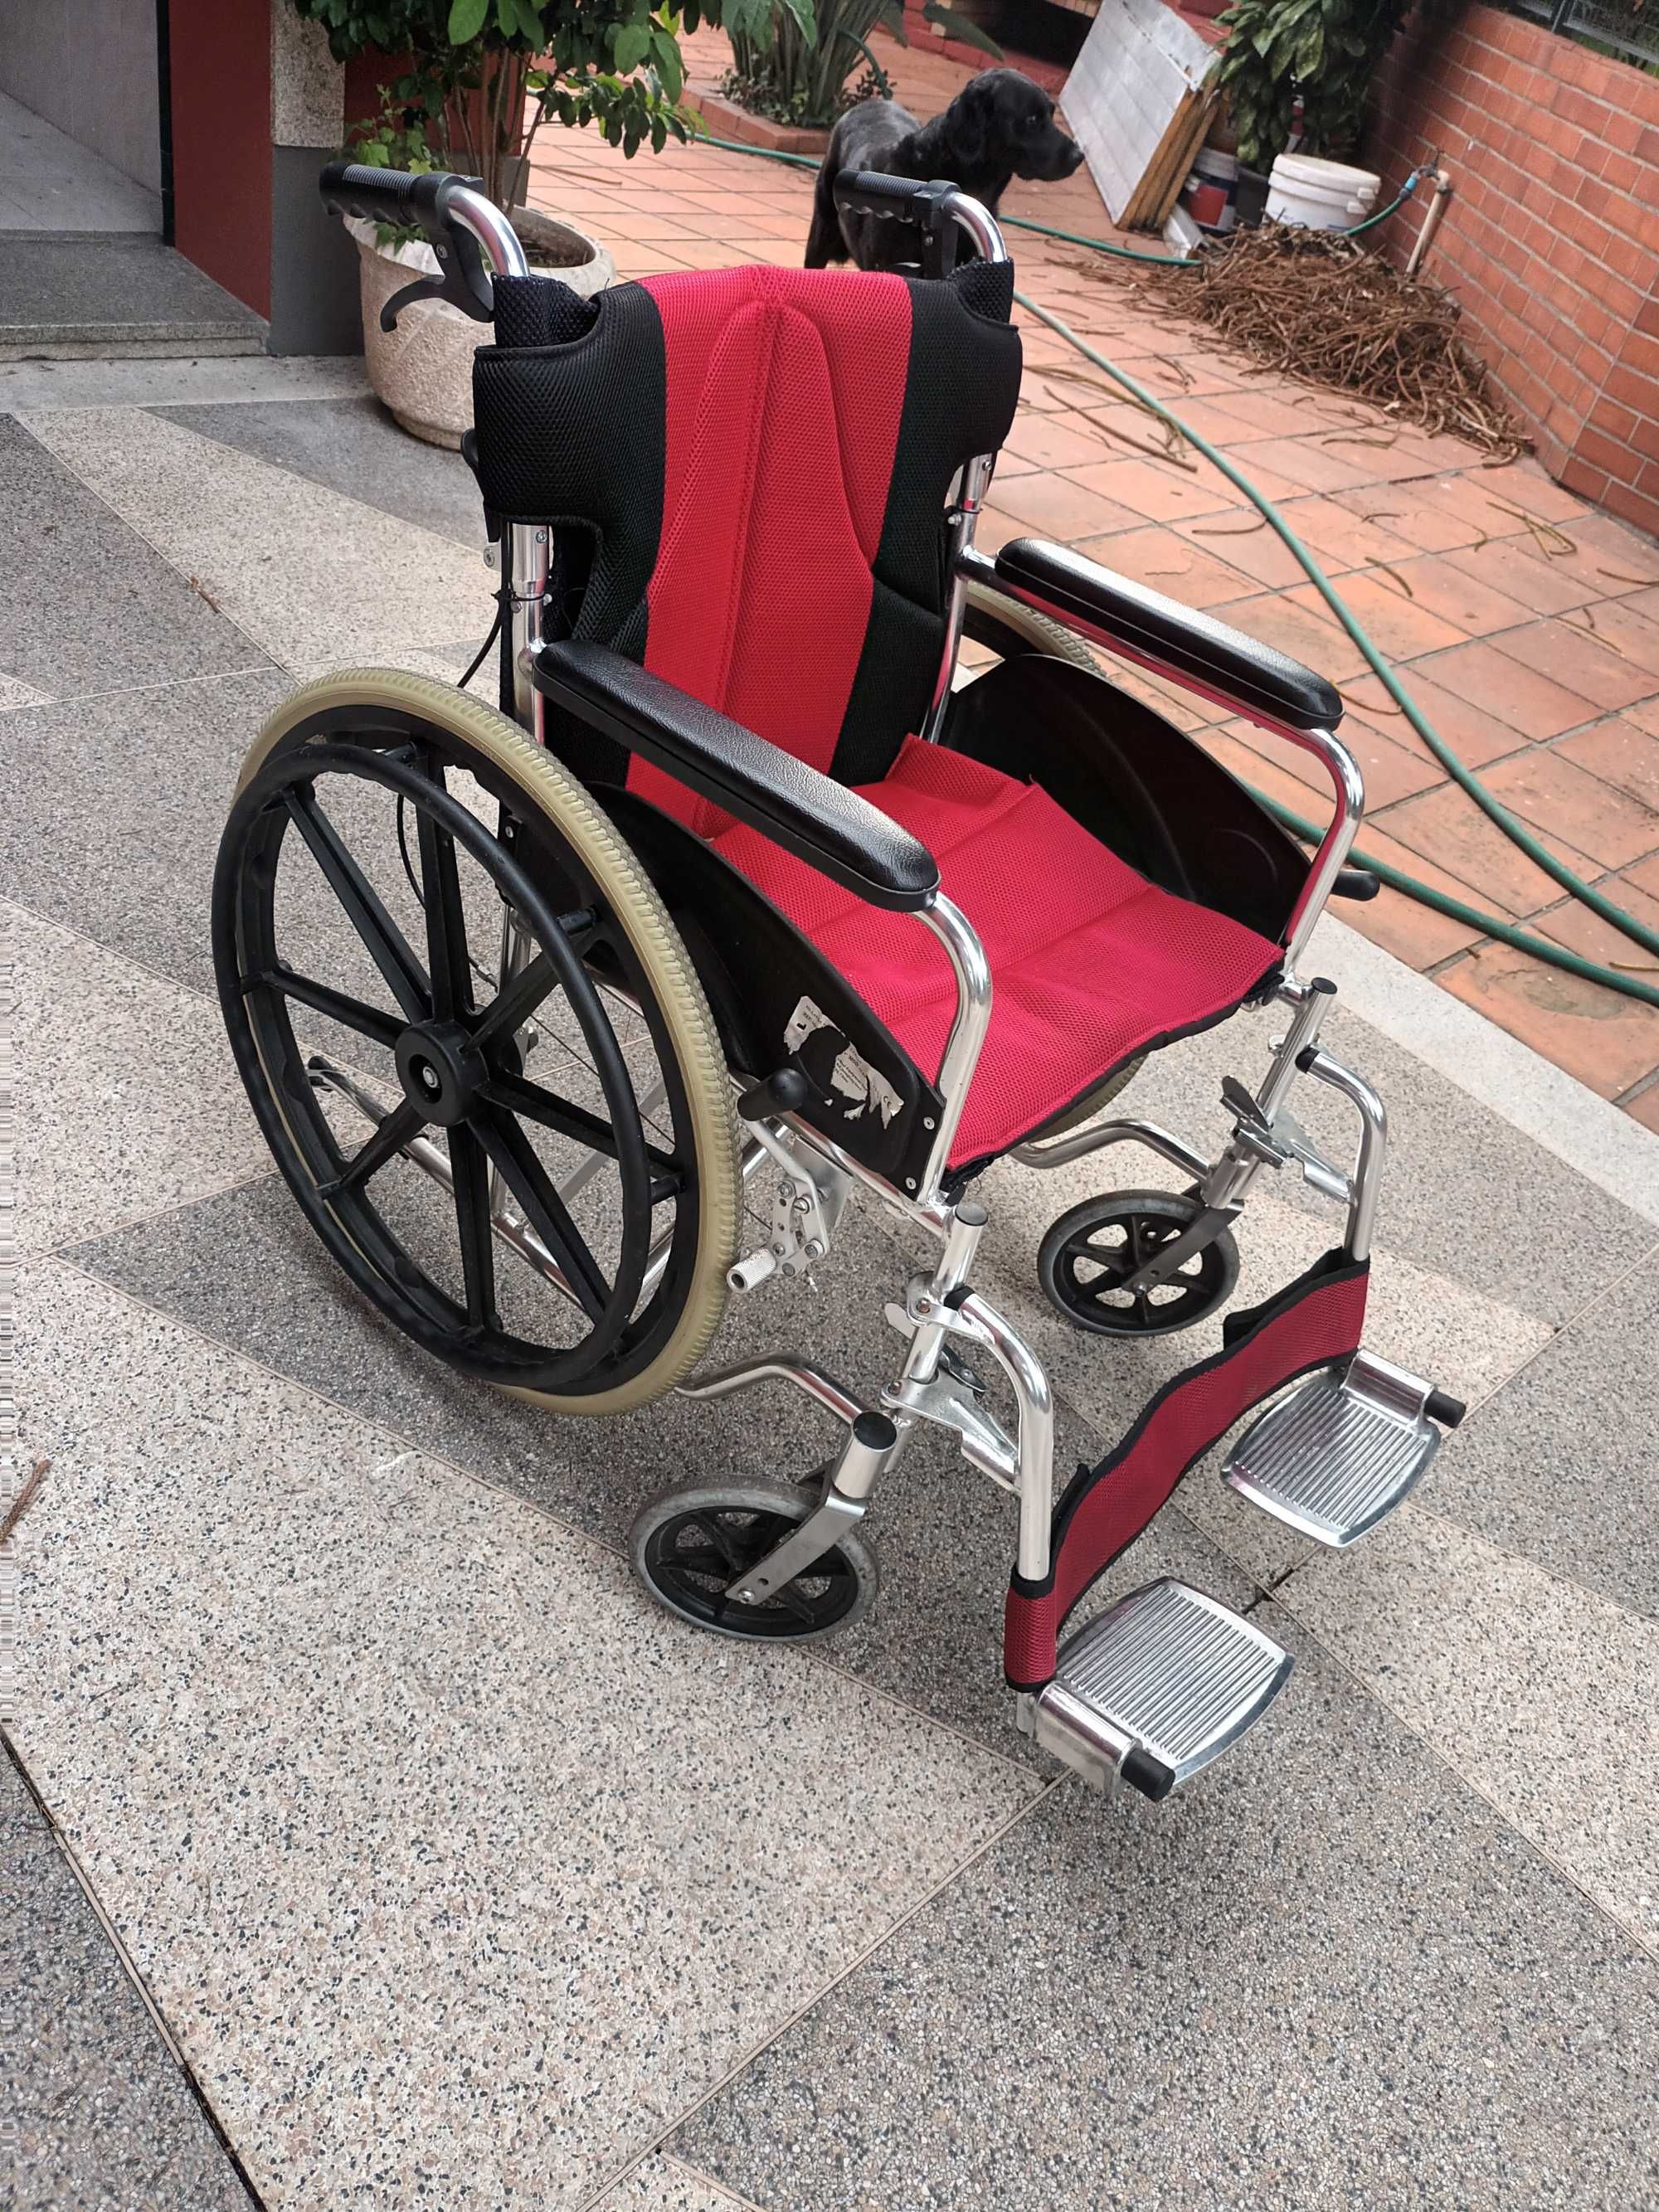 Cadeira de Rodas Manual - Rebatível